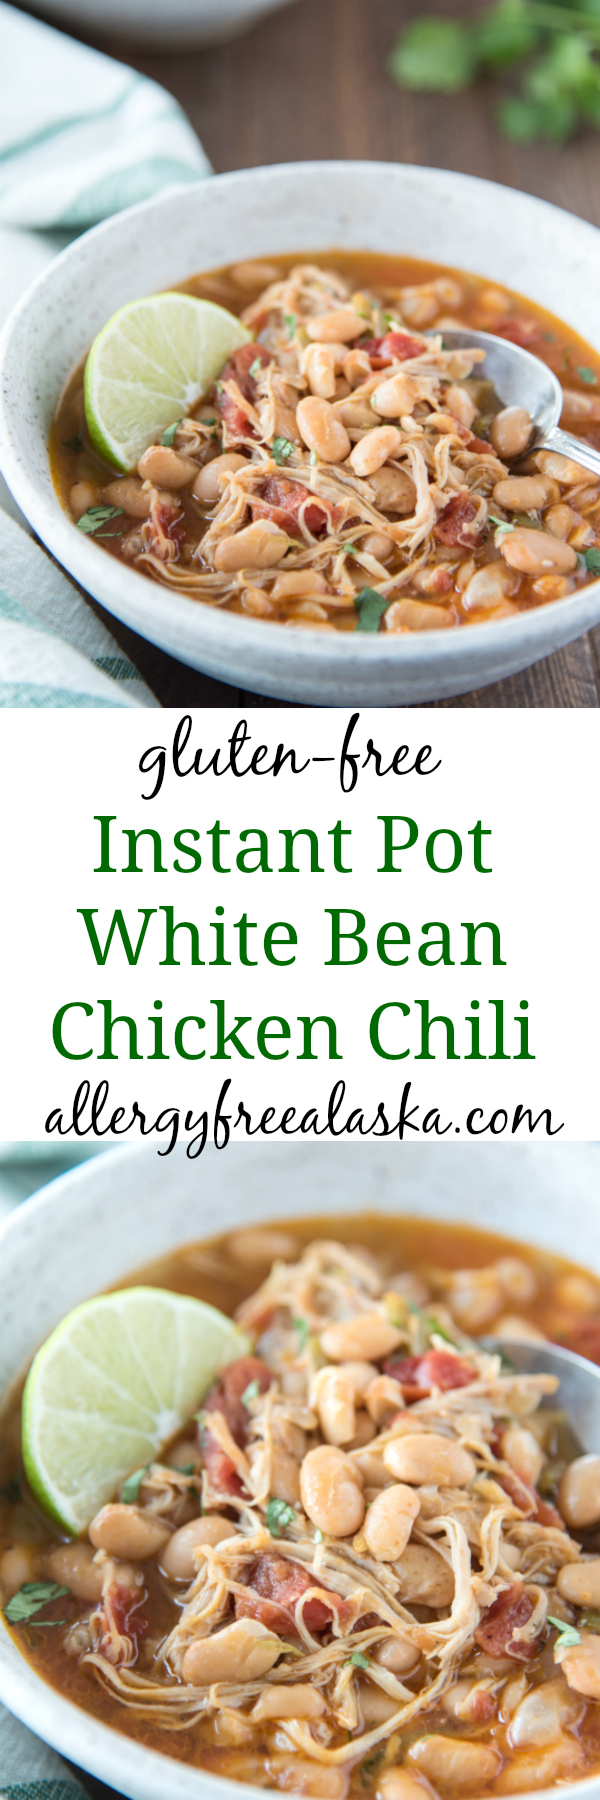 instant pot white bean chicken chili recipe collage